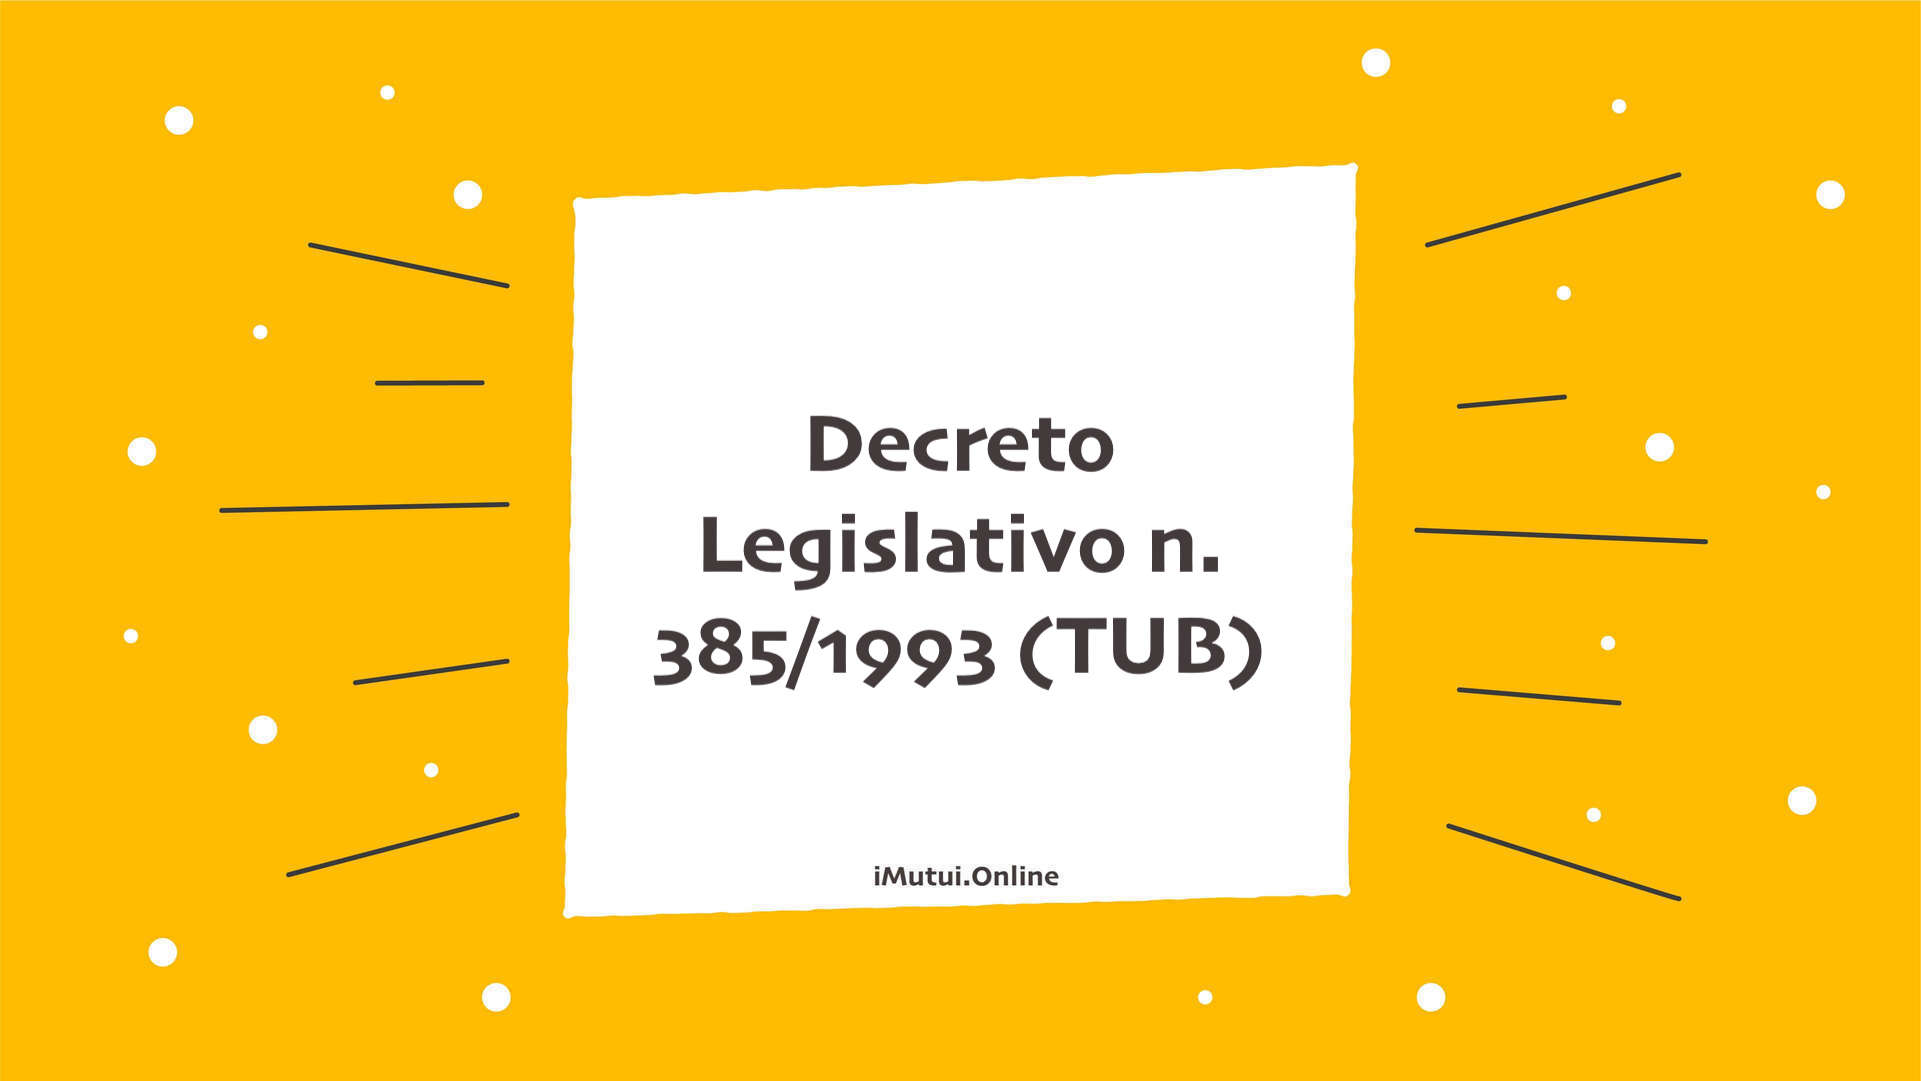 Decreto Legislativo n. 385/1993 (TUB)